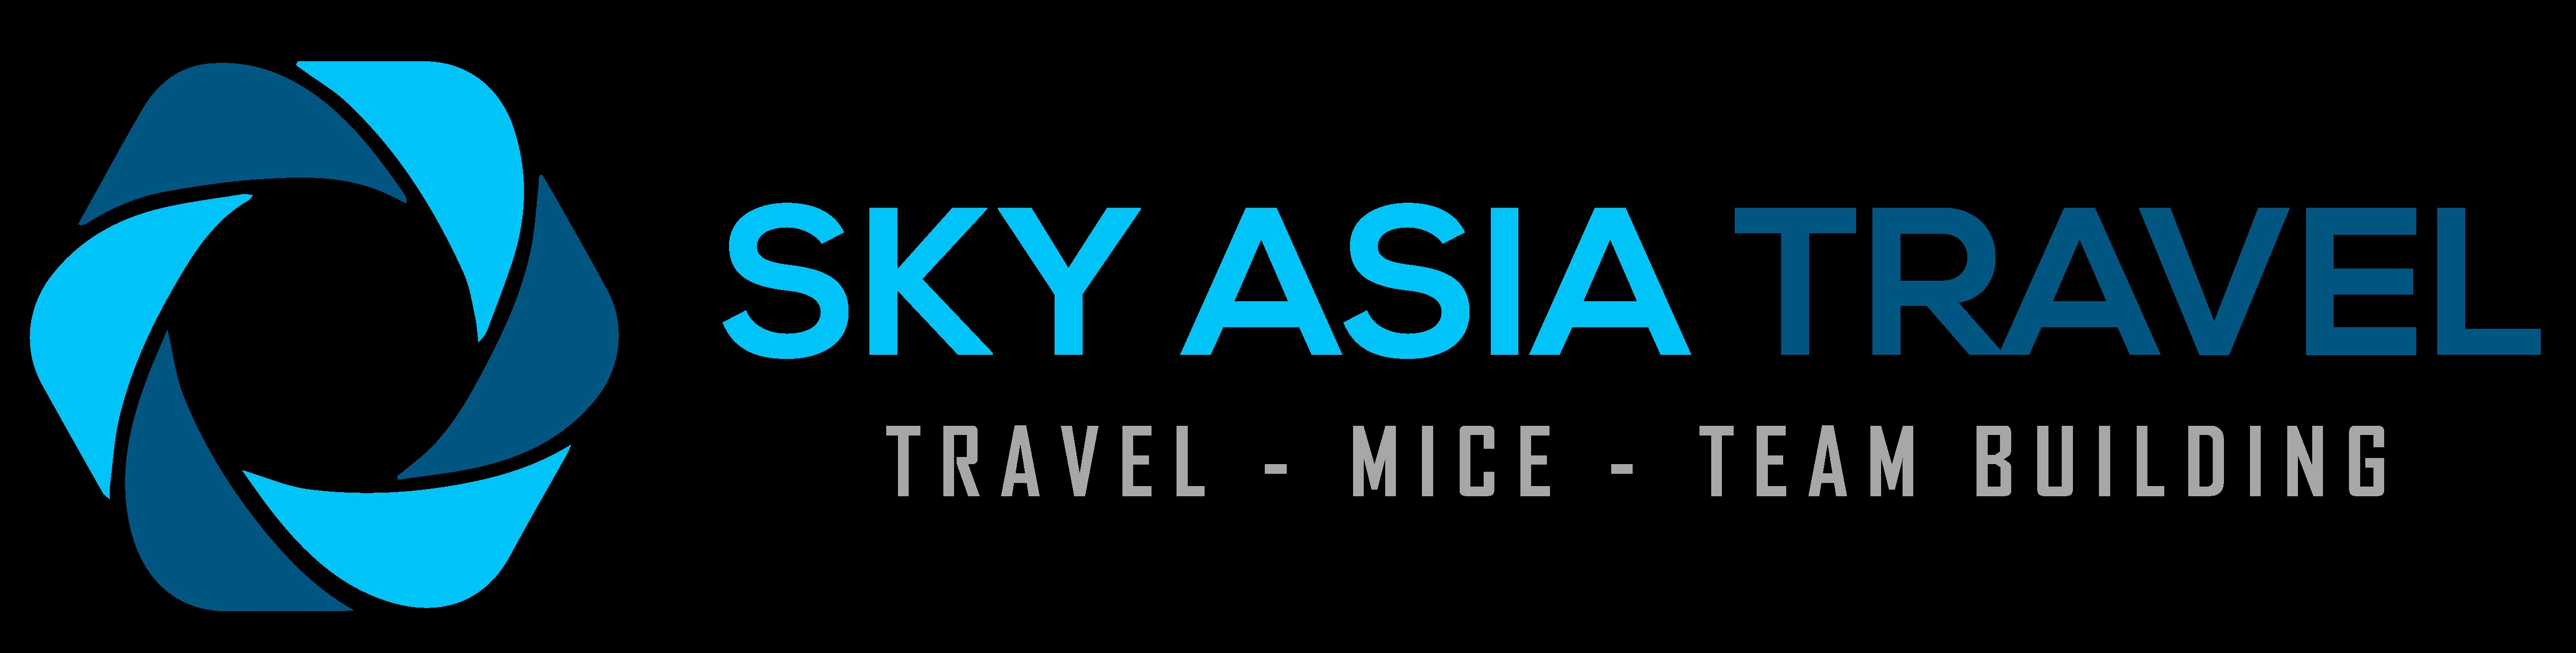 Sky Asia Travel